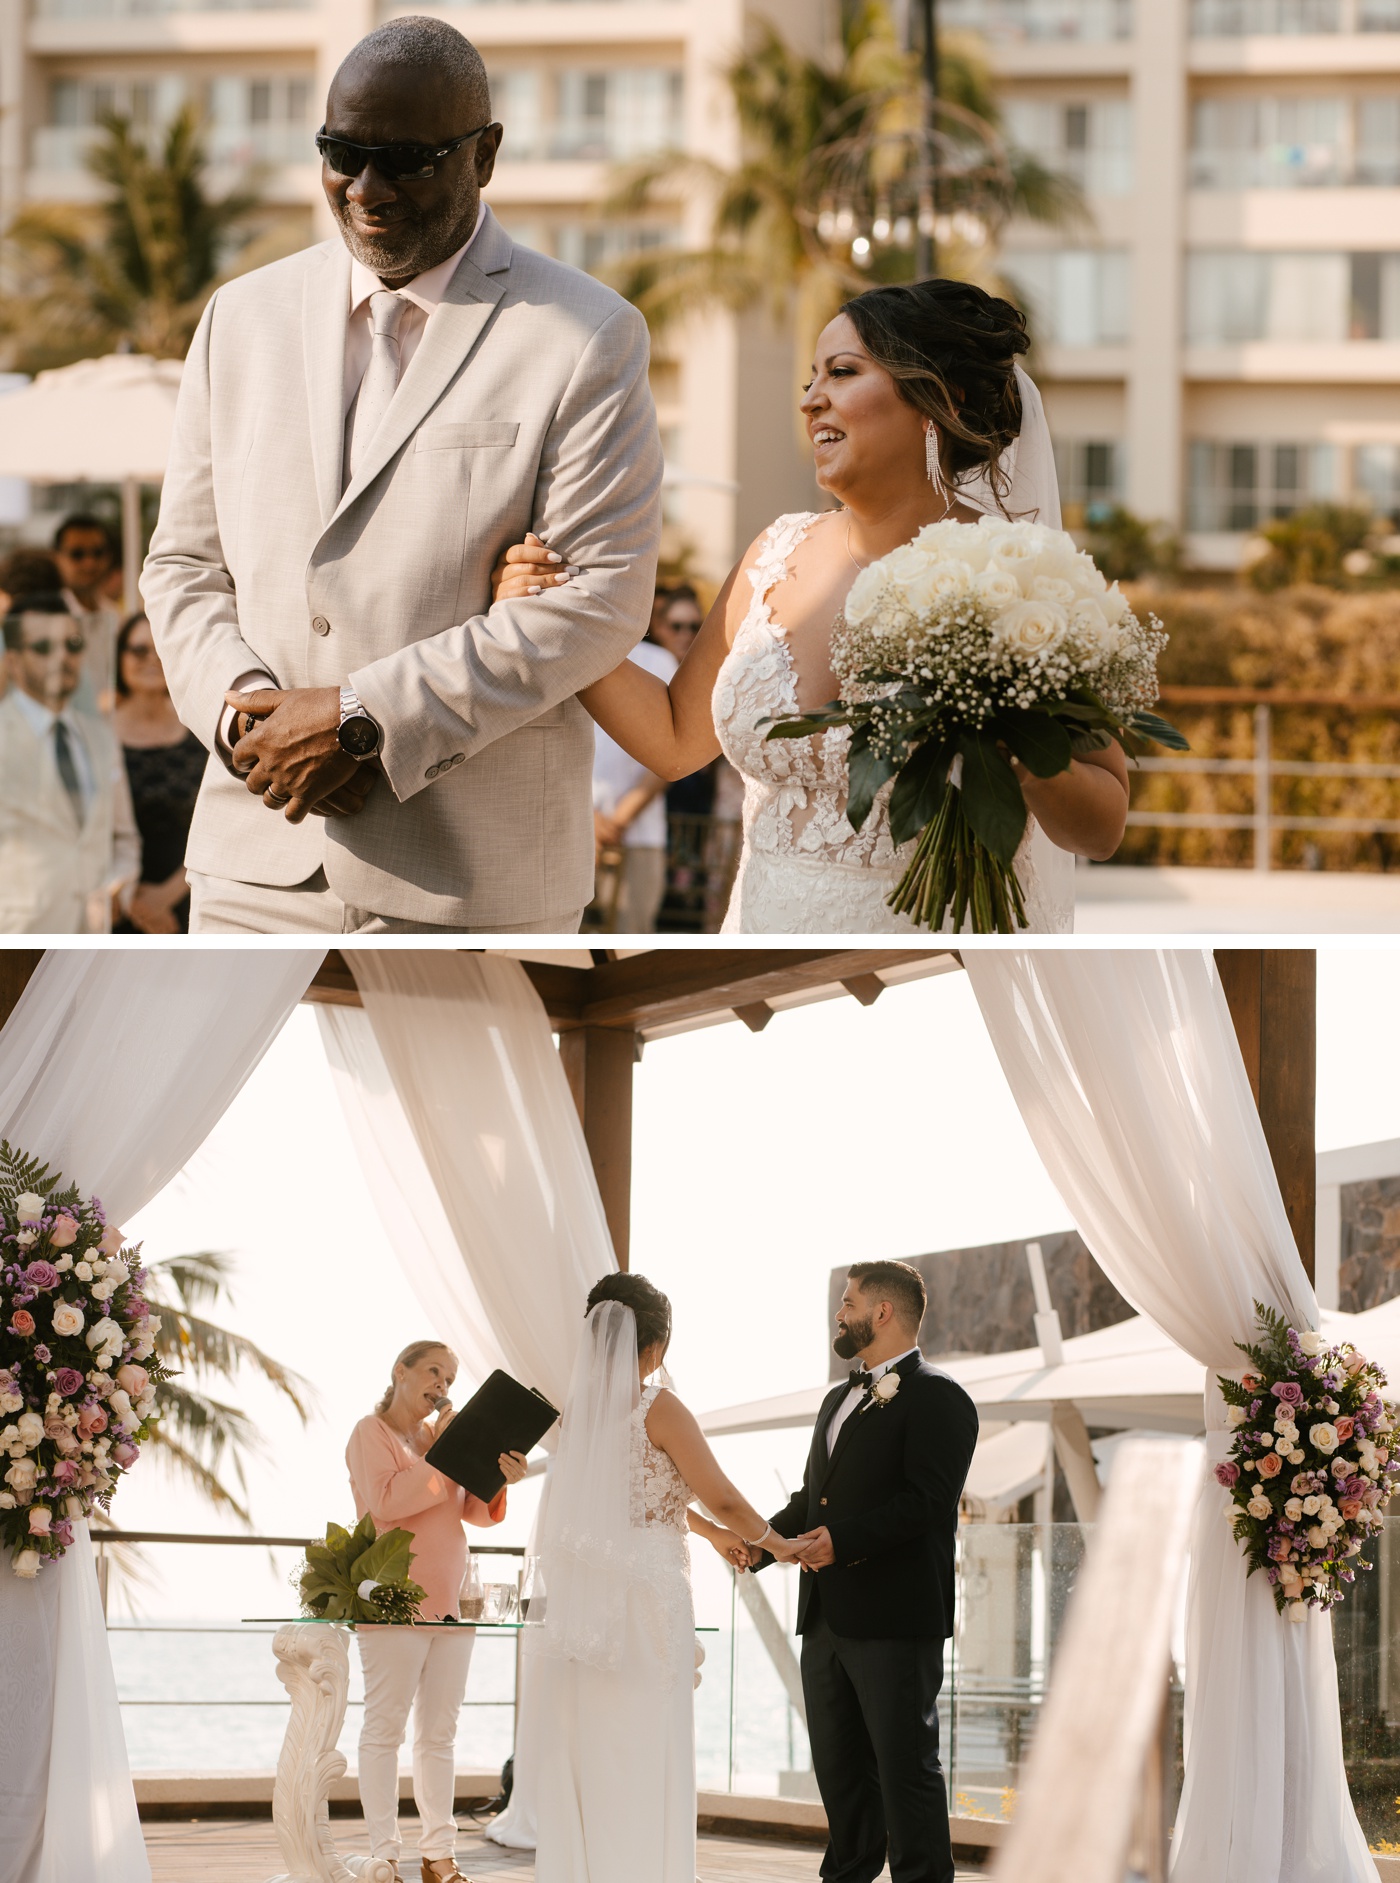 Outdoor wedding ceremony at Secrets Vallarta Bay